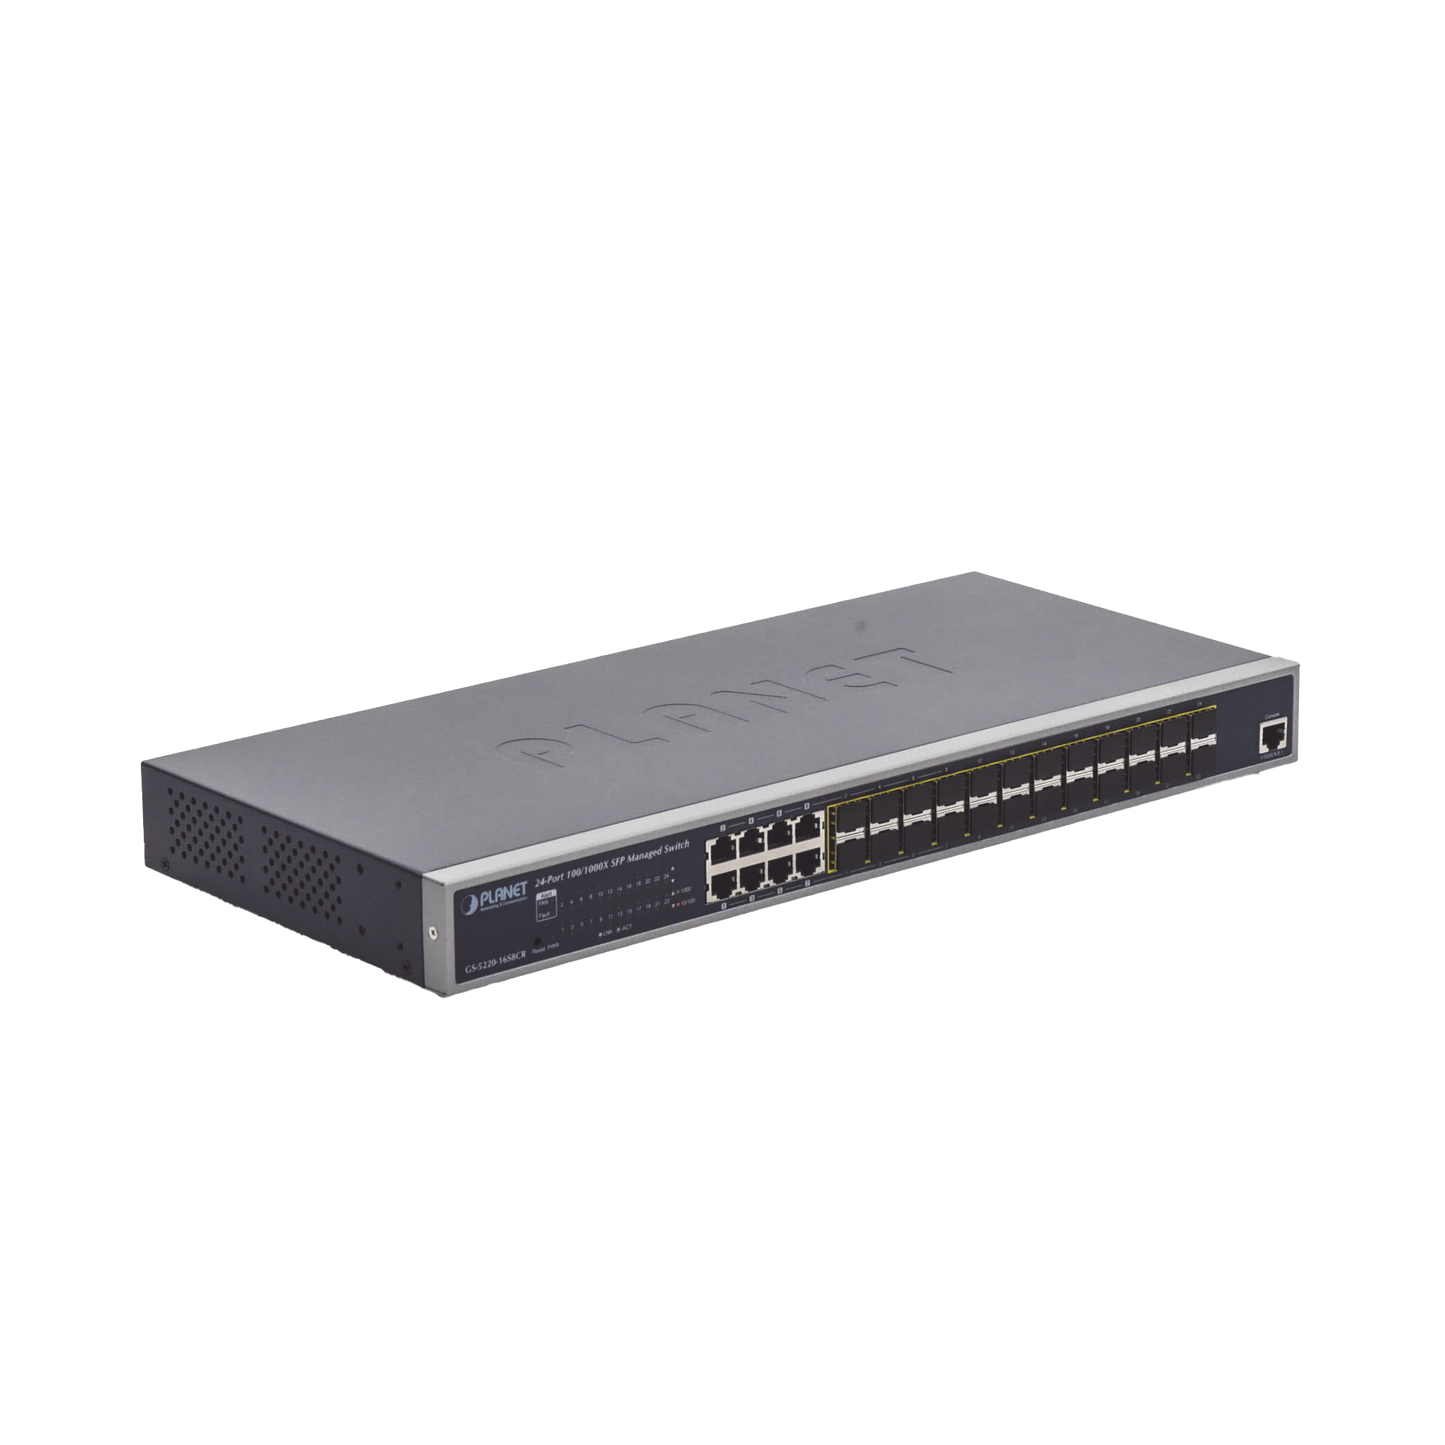 Layer 2 Managed Switch with Redundant Power Supply, 24 Gigabit 100 / 1000X SFP ports, 8 Gigabit RJ45 Combo Ports.